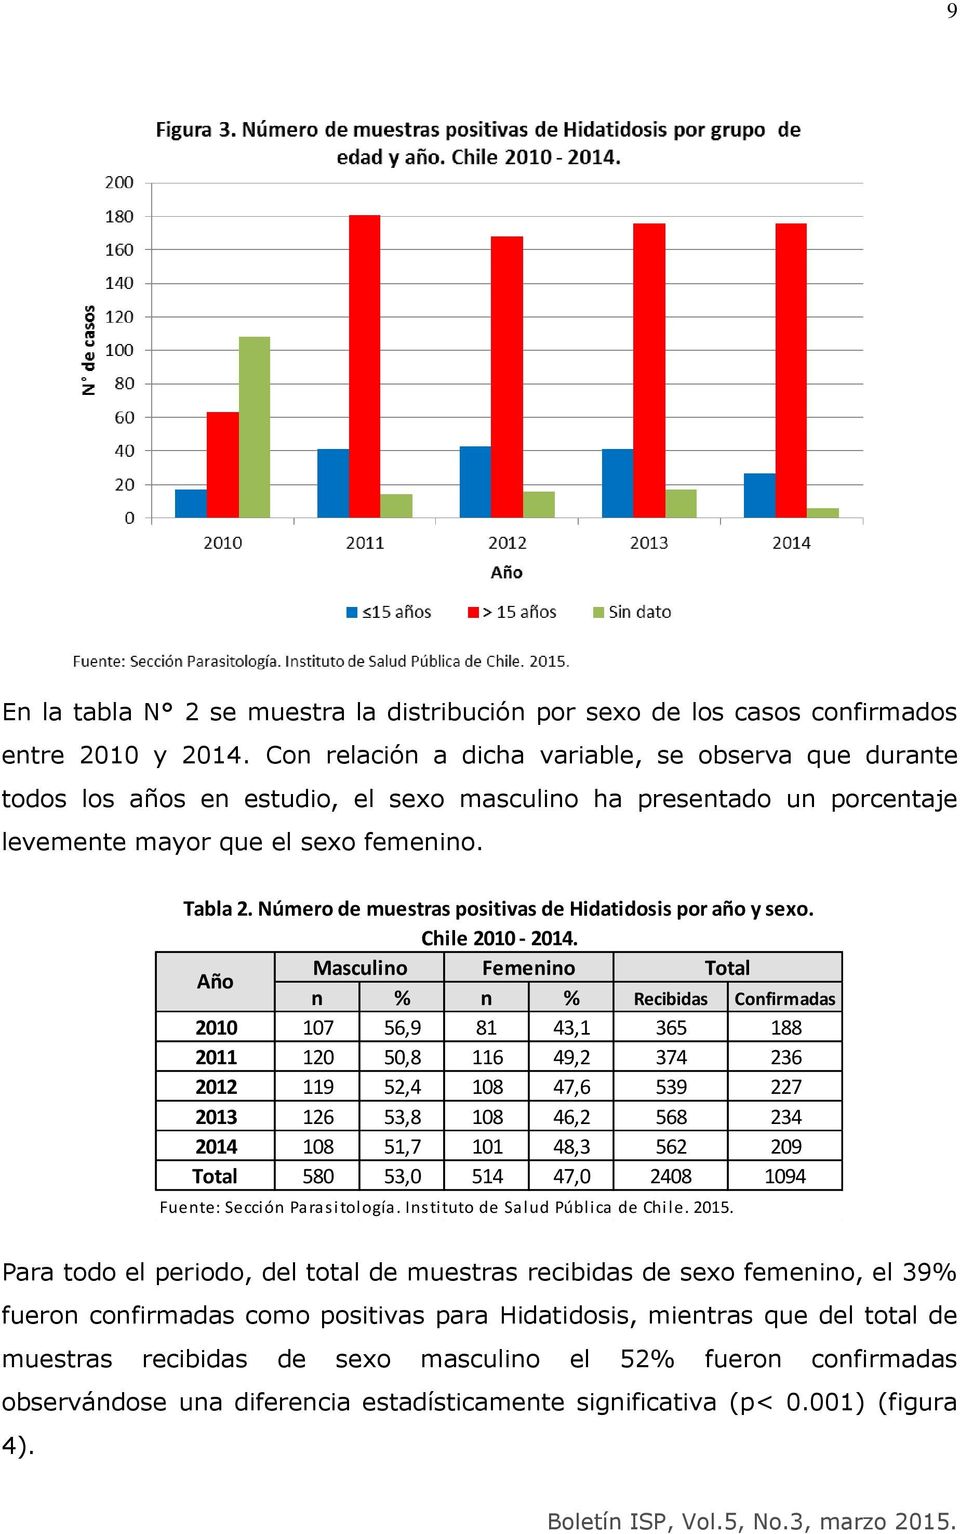 Número de muestras positivas de Hidatidosis por año y sexo. Chile 2010-2014.